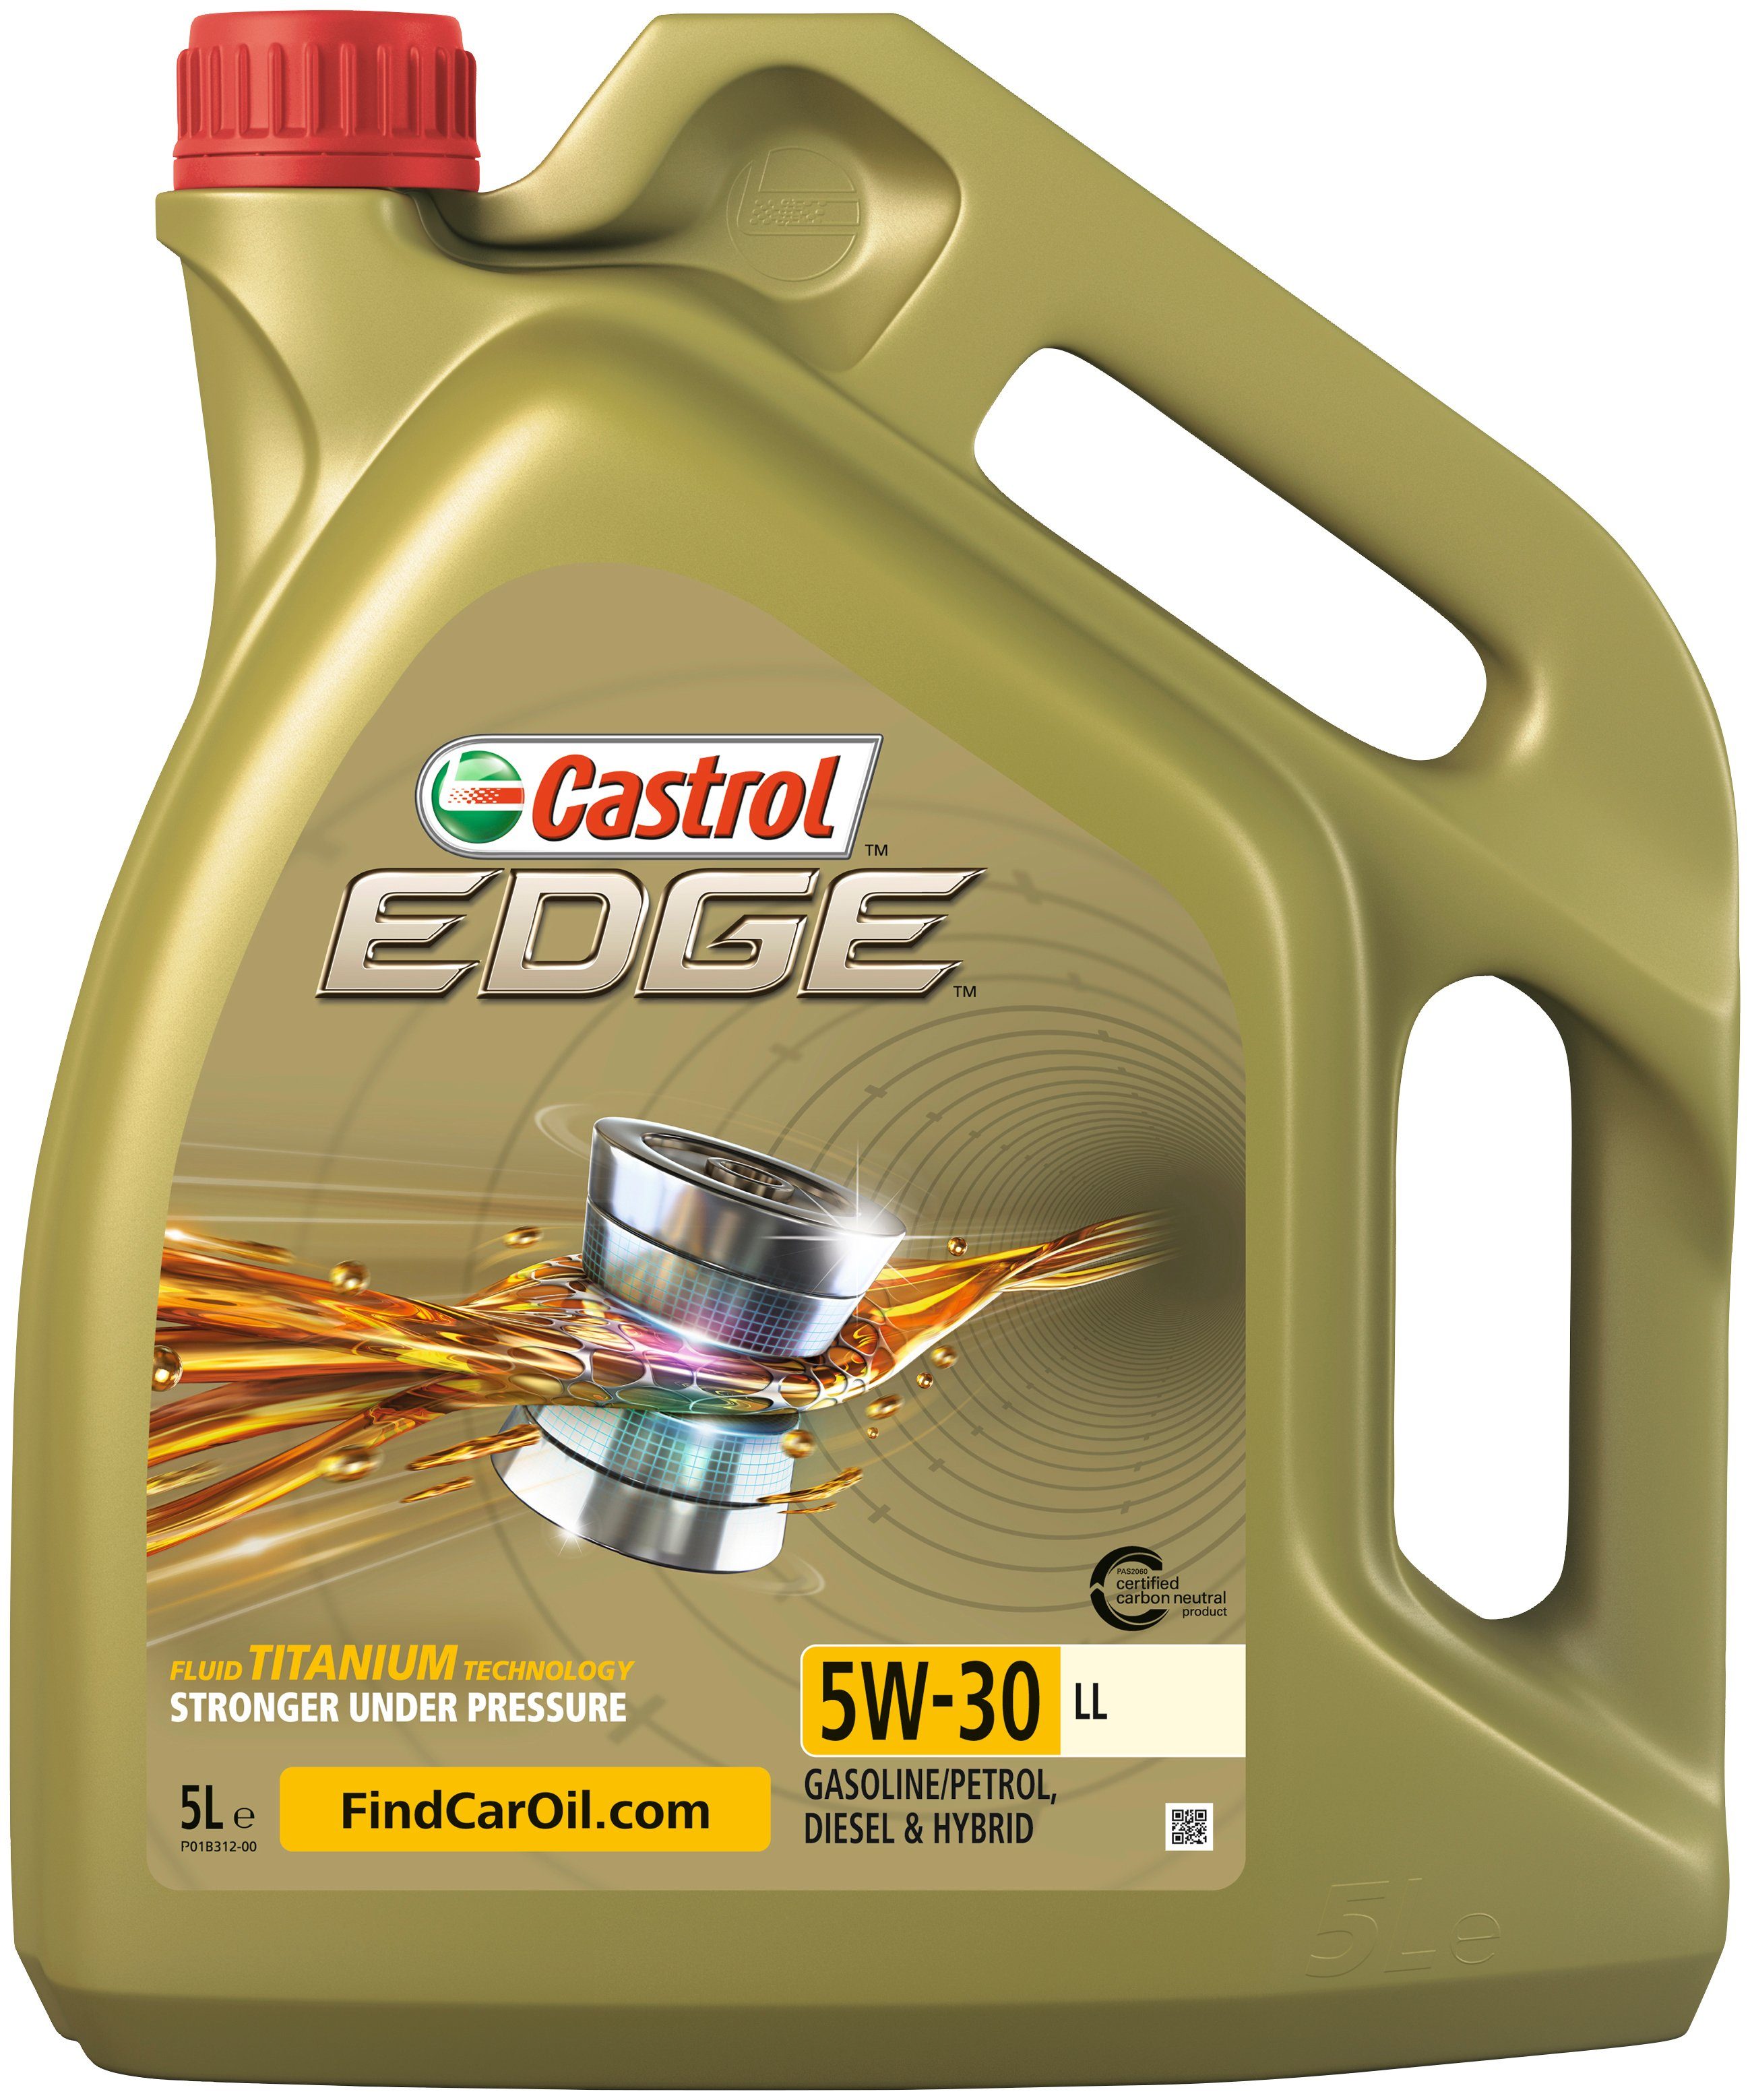 Castrol Motoröl EDGE für 5 5W-30 LL, Liter, PKW